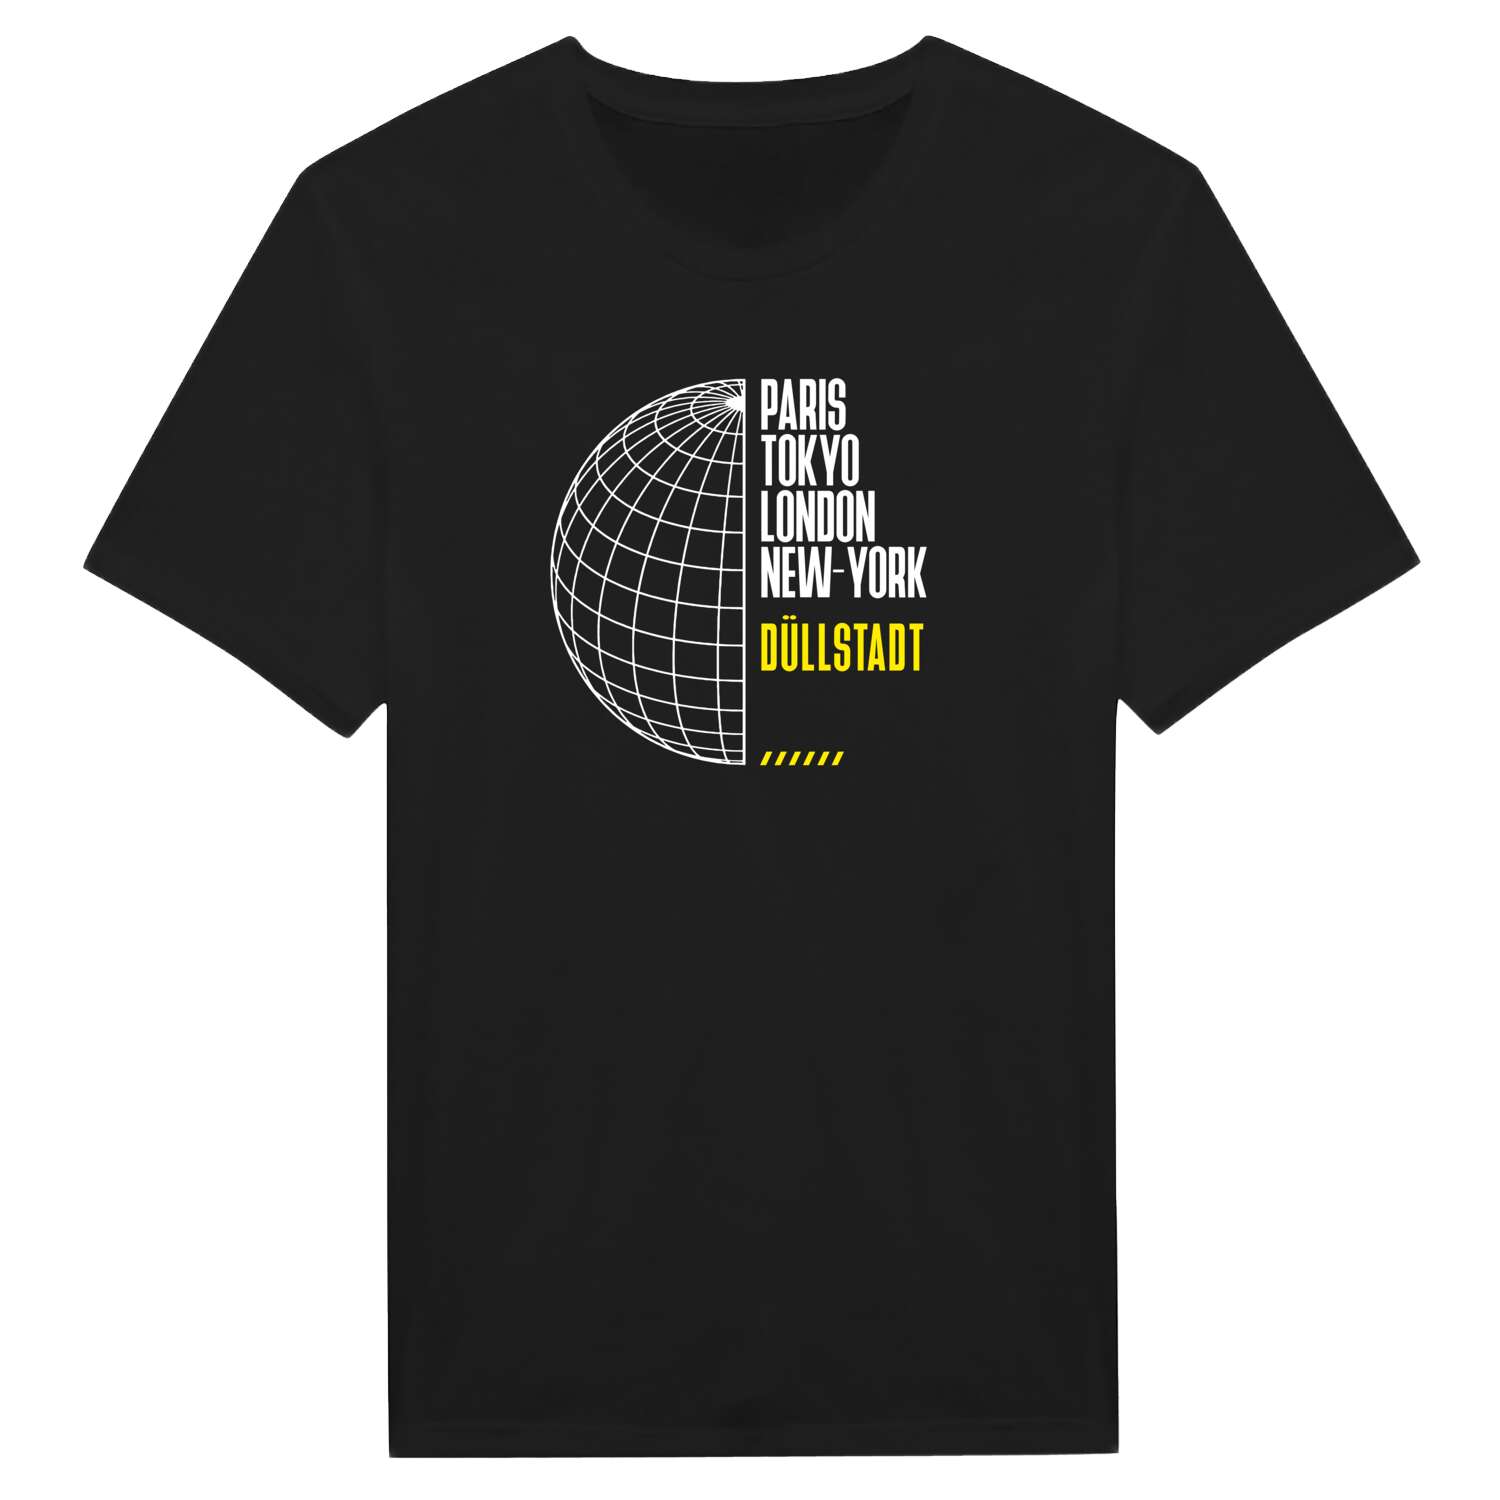 Düllstadt T-Shirt »Paris Tokyo London«